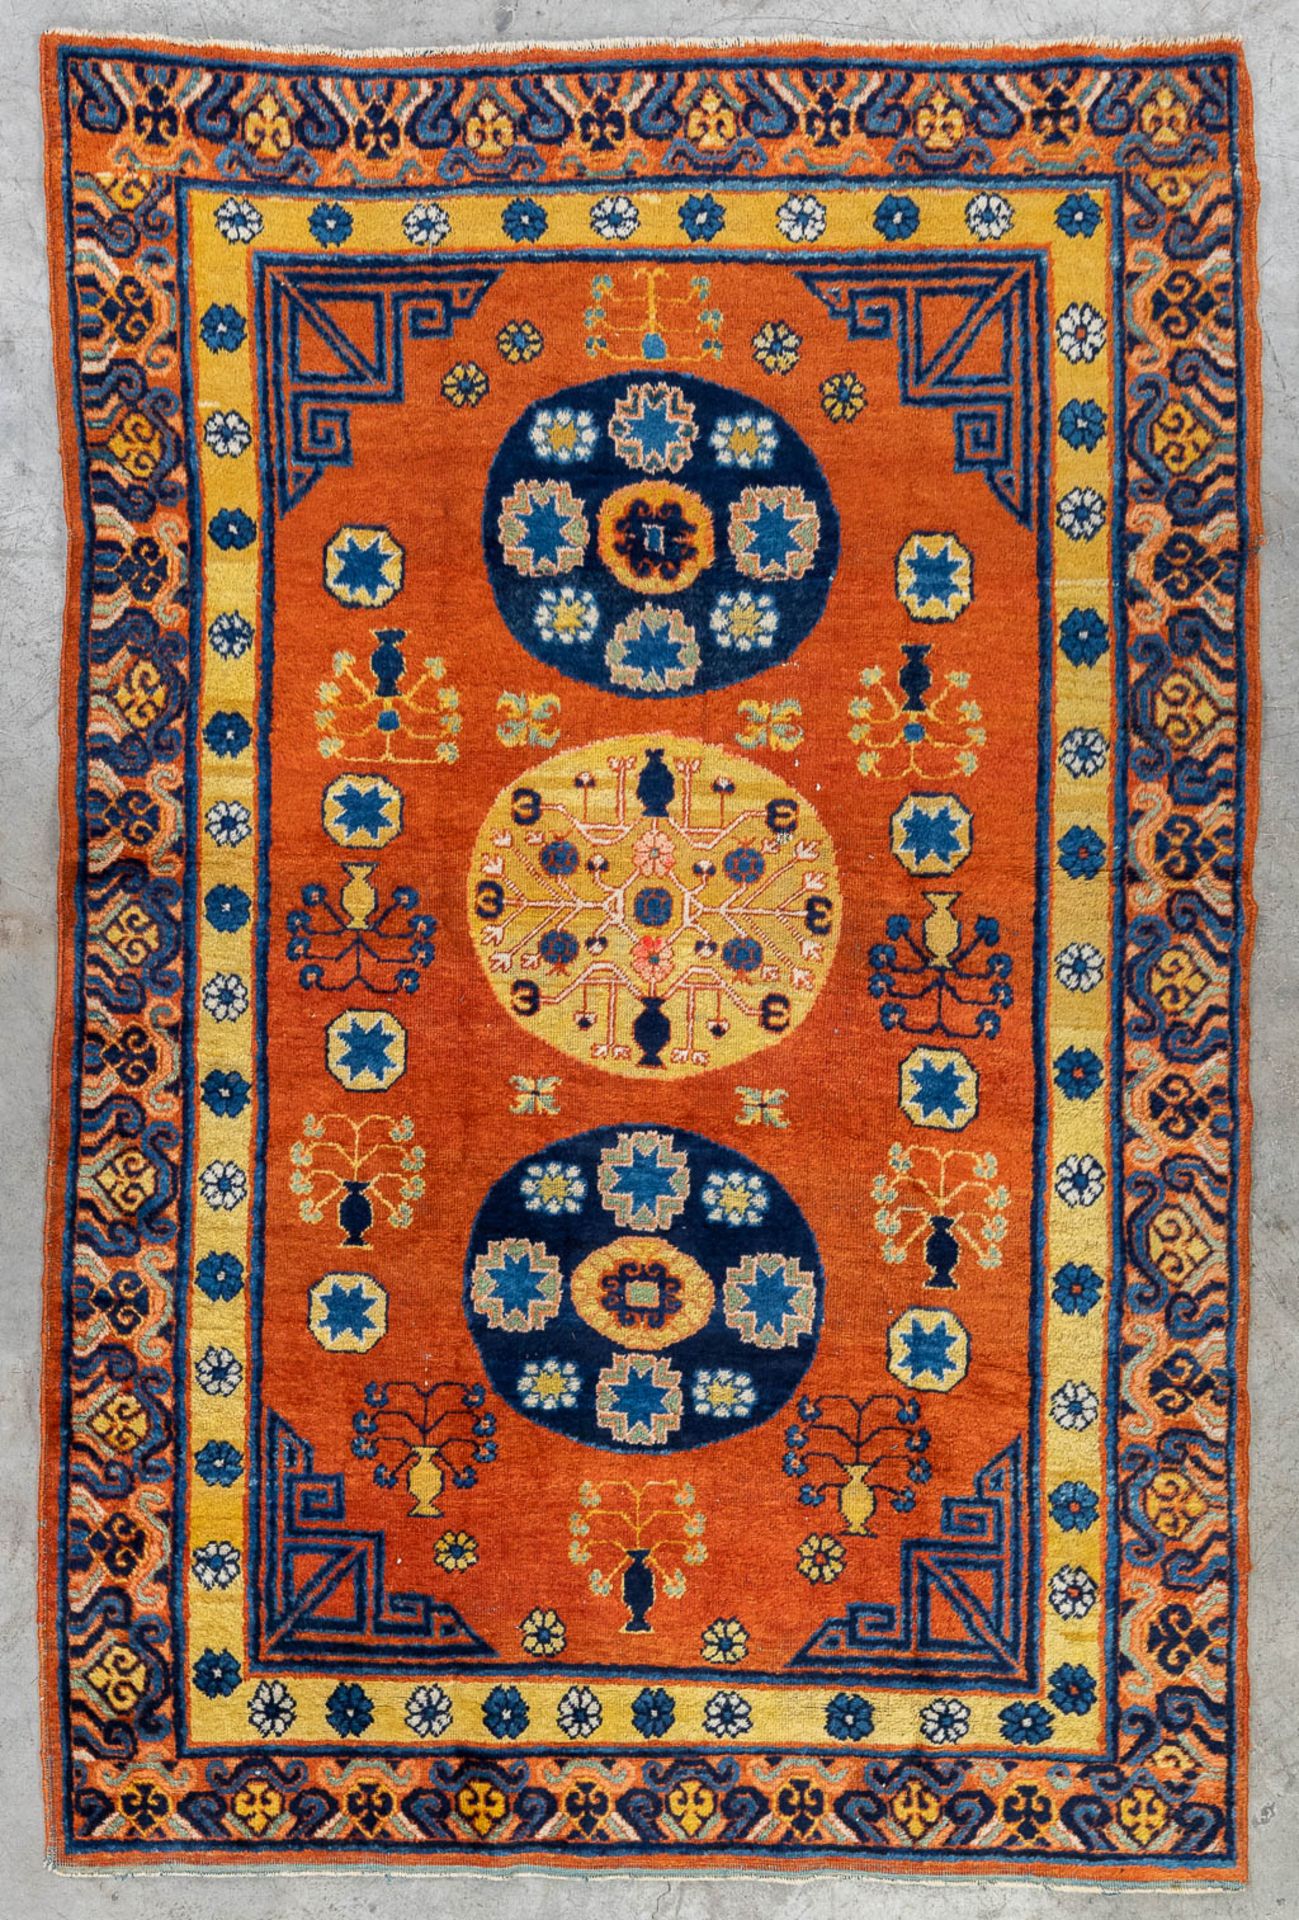 An Oriental hand-made carpet, Turkistan, Samerkand. (L: 178 x W: 122 cm)